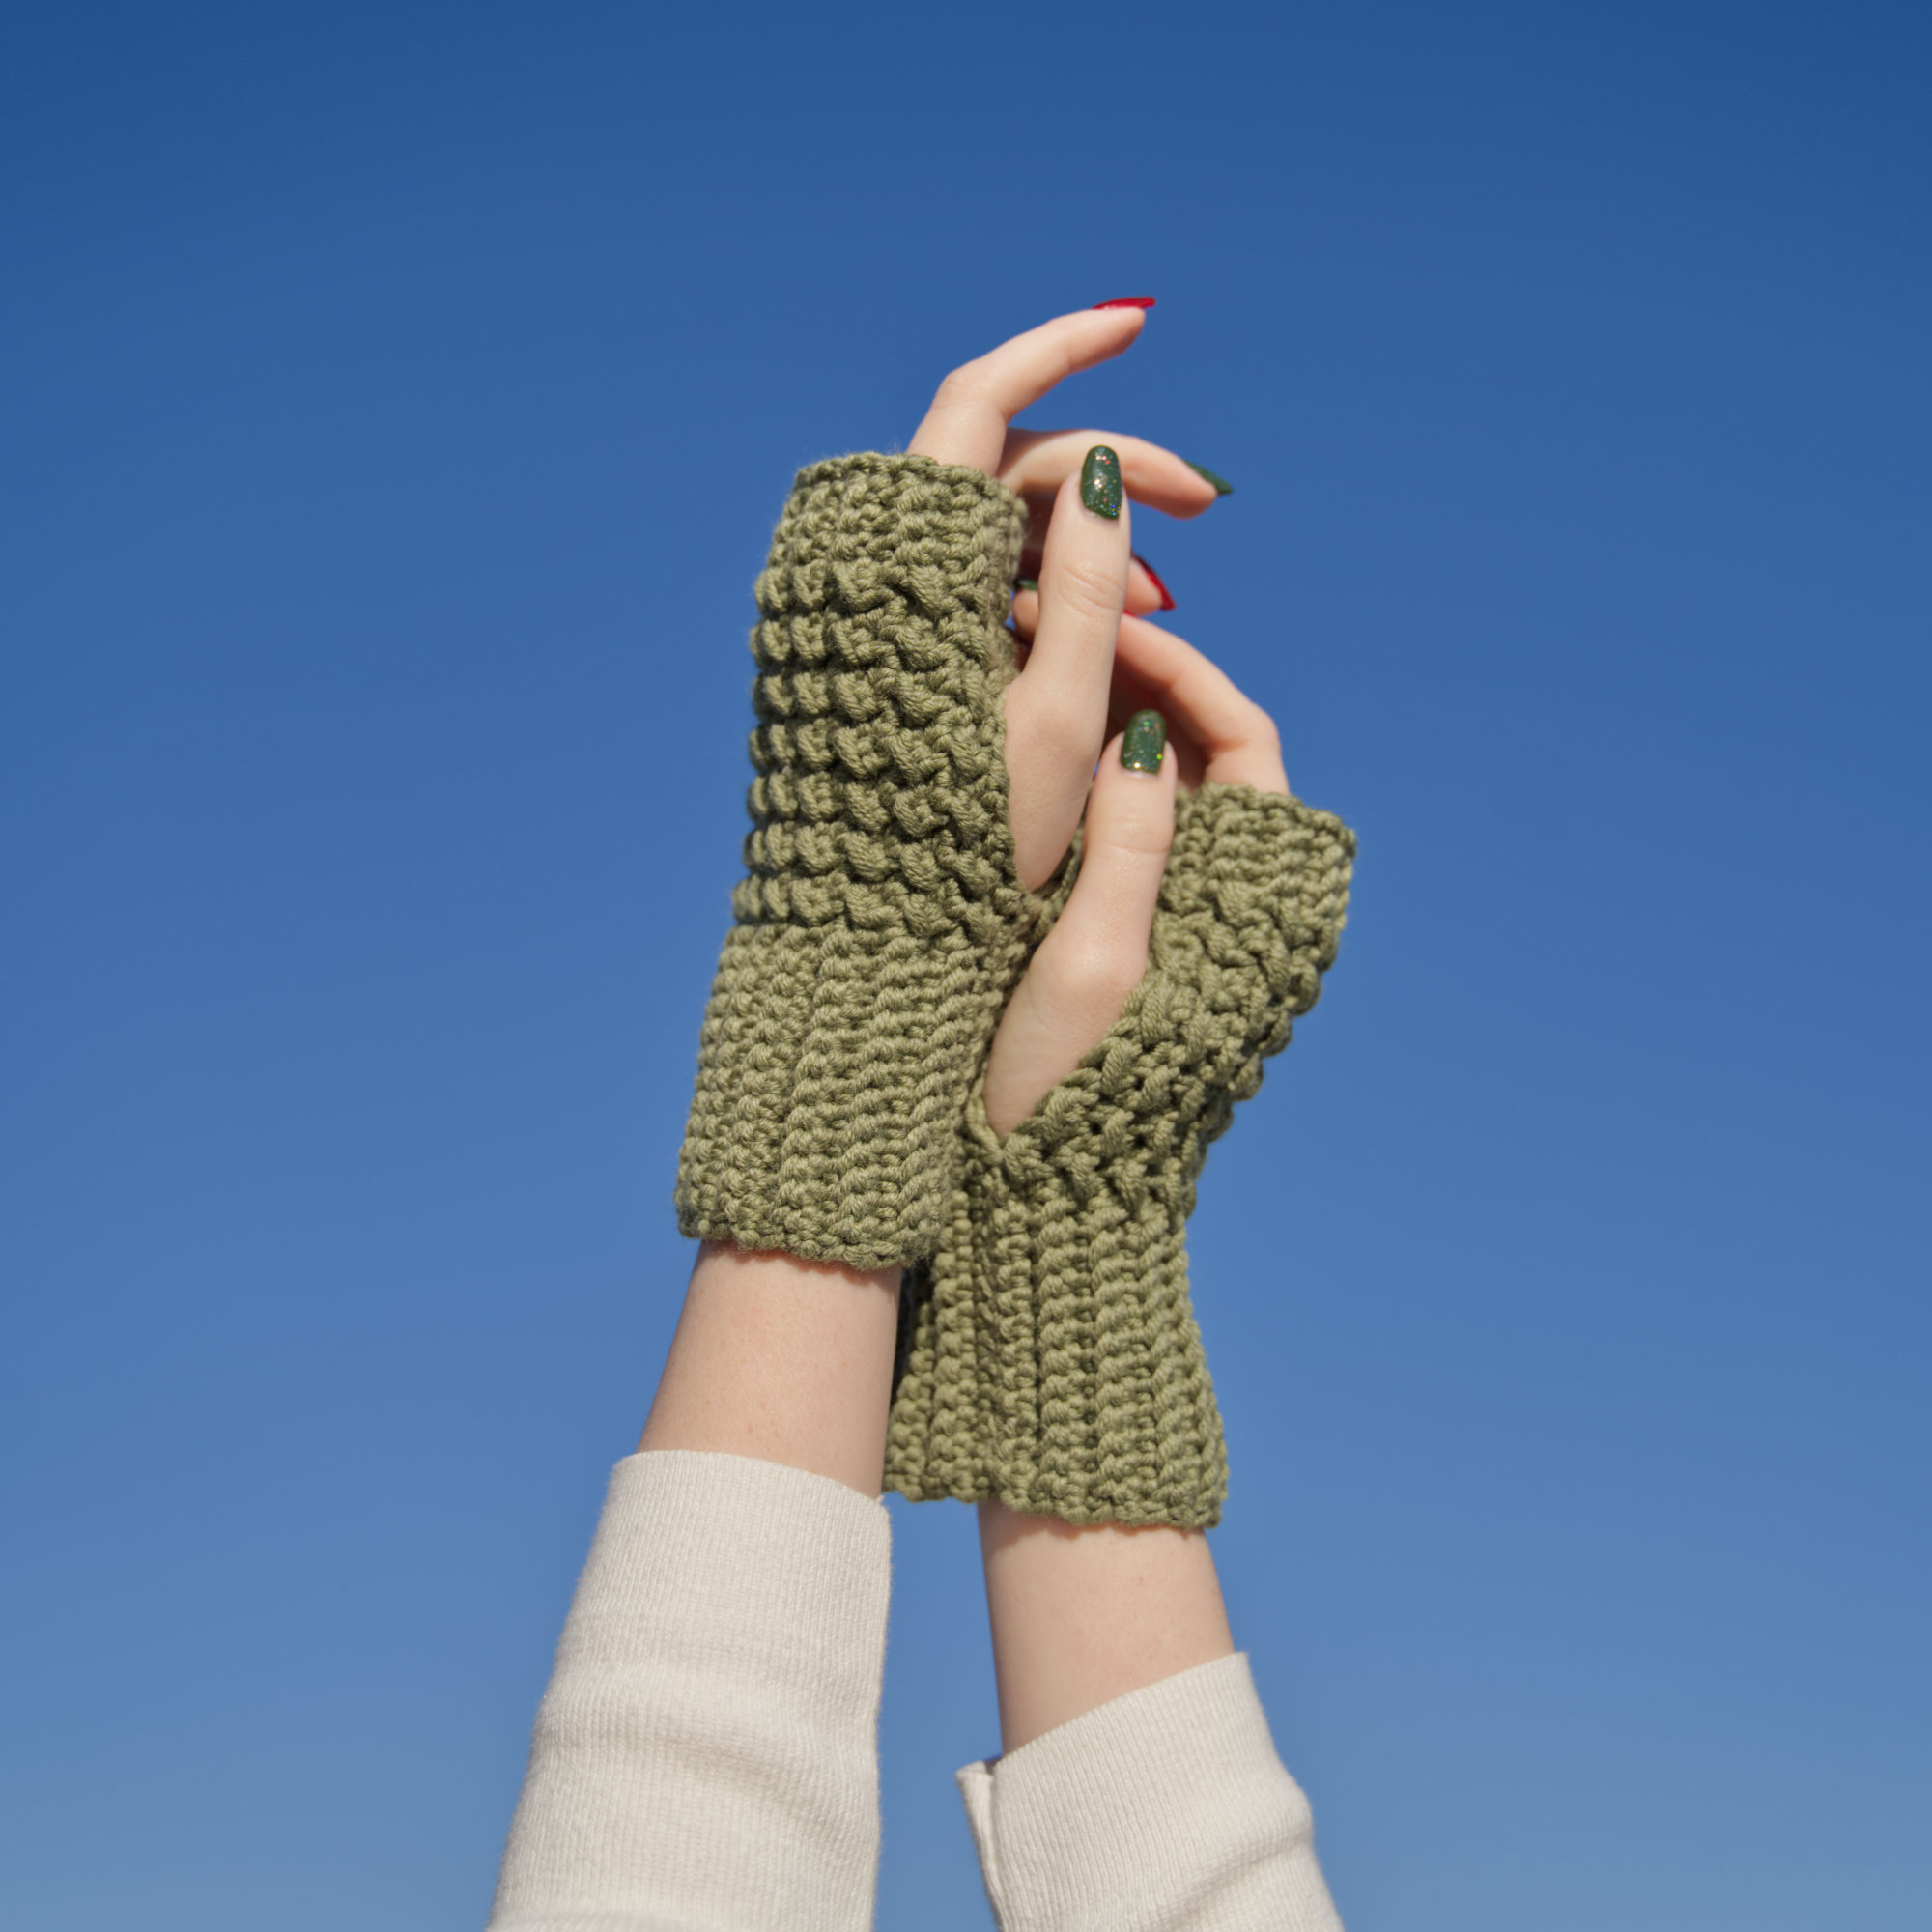 Quick & Easy Crochet Fingerless Gloves - FREE Pattern + Video